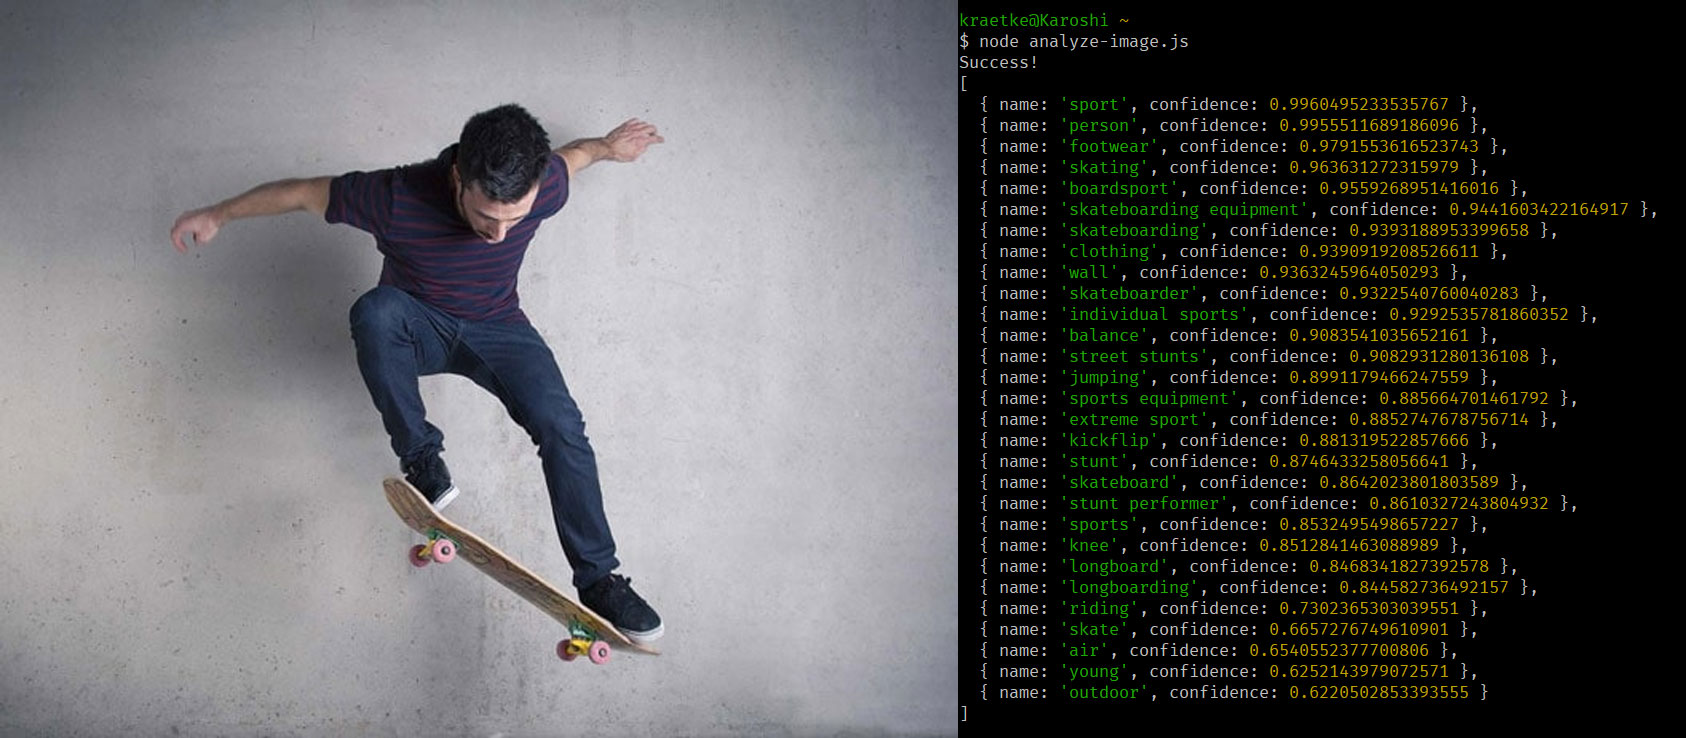 KI-Analyseergebnisse eines Fotos von einem Skateboarder. Die KI ordnet Begriffe wie sports, skating, skateboarder zu.